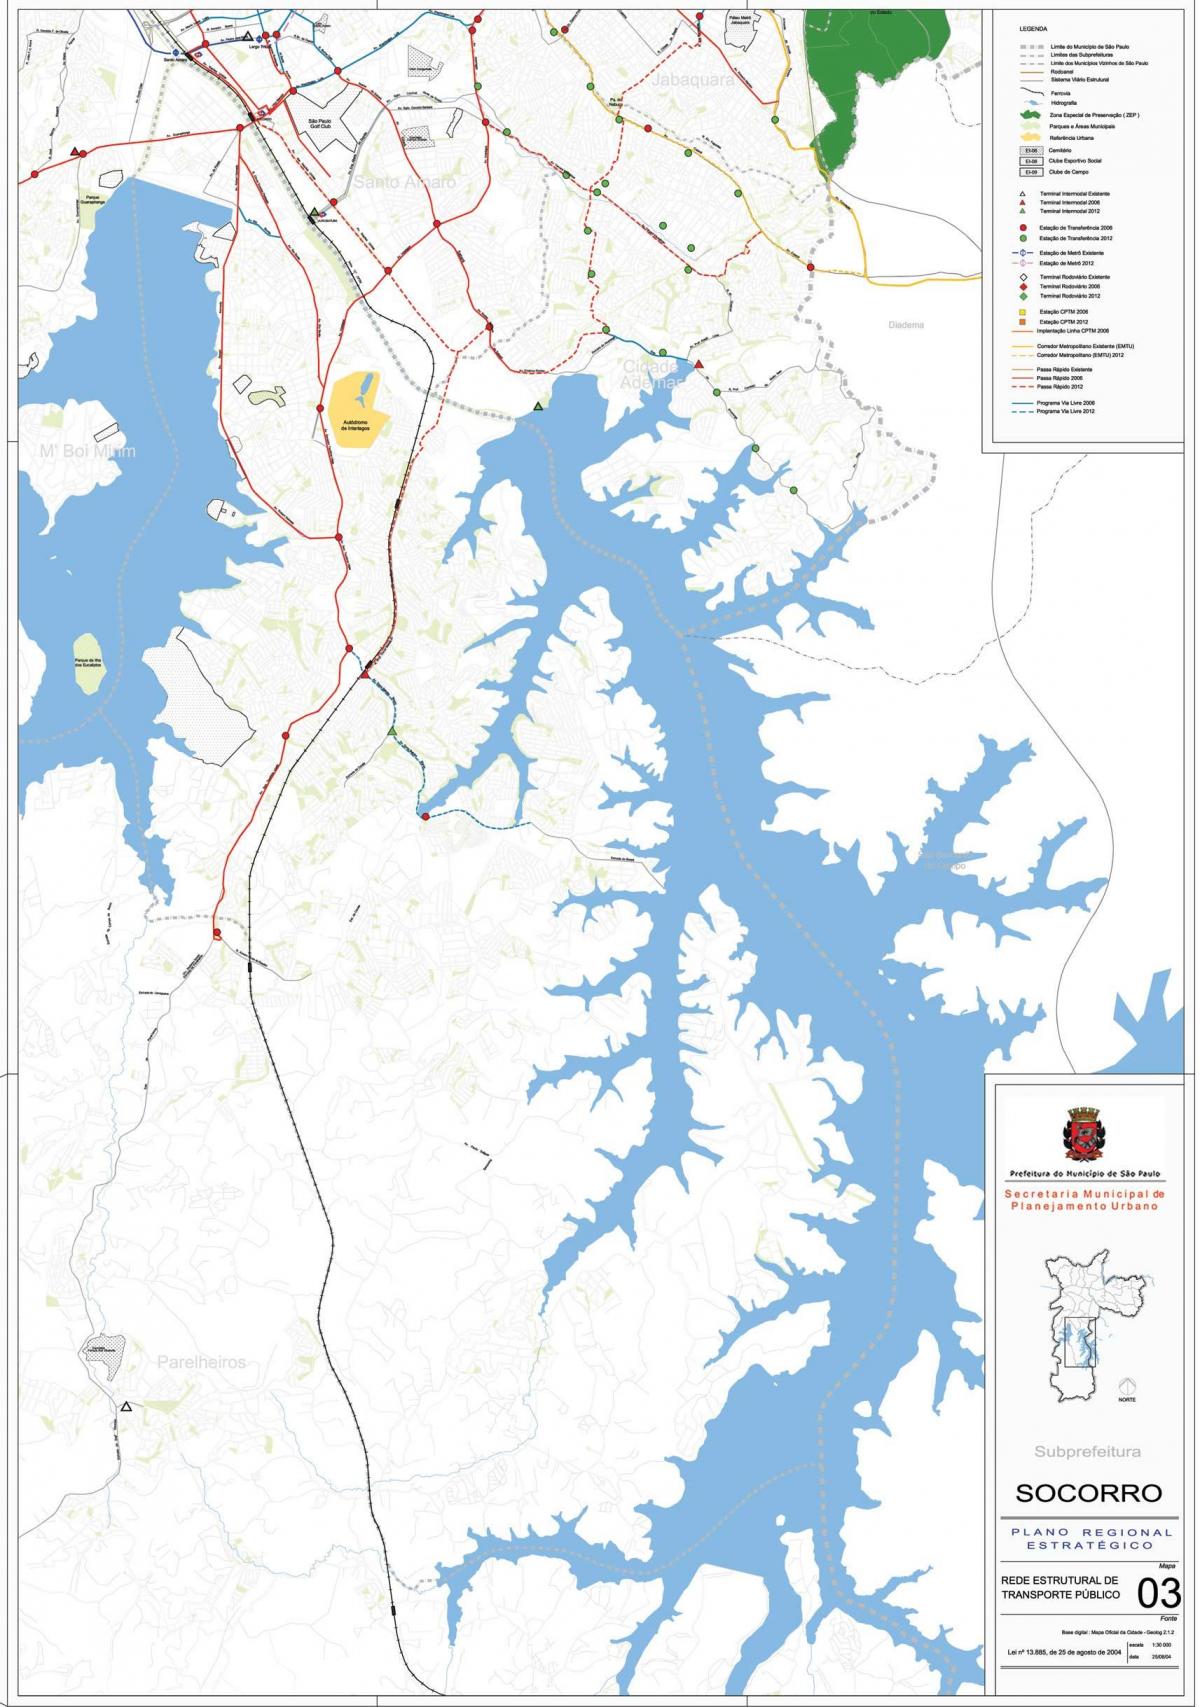 Mapa ng Capela gawin Socorro São Paulo - Pampublikong transports